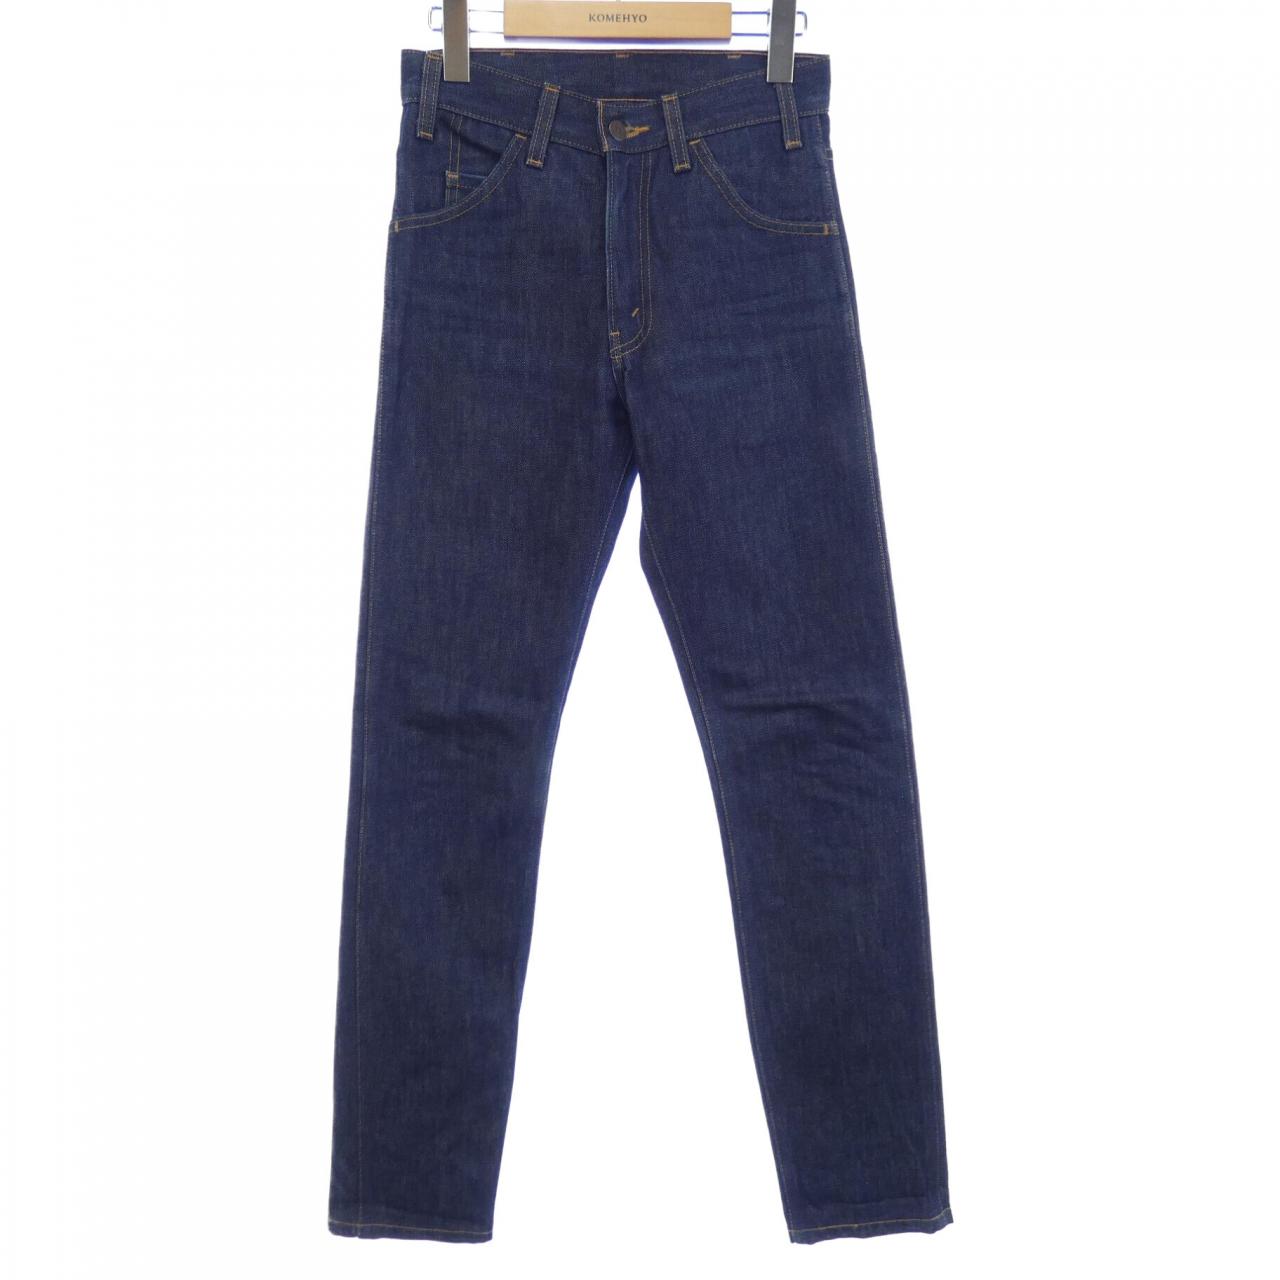 LEVI'S vintage CLOTH jeans